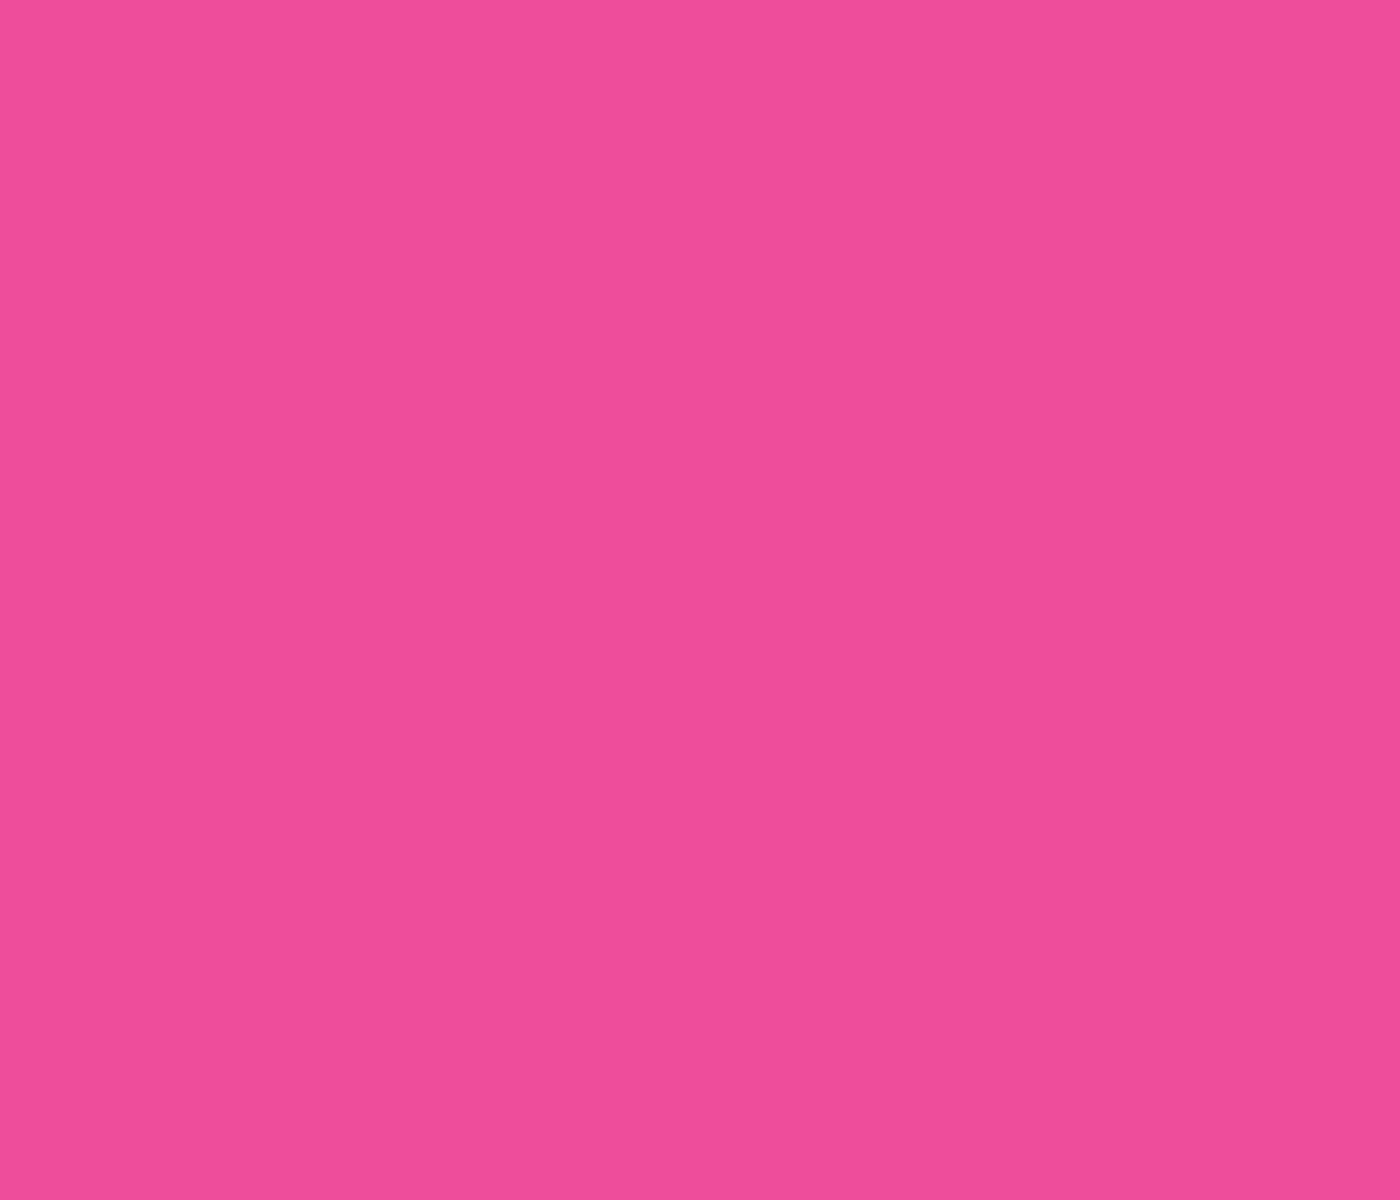 Krink Marker K-60 Pink